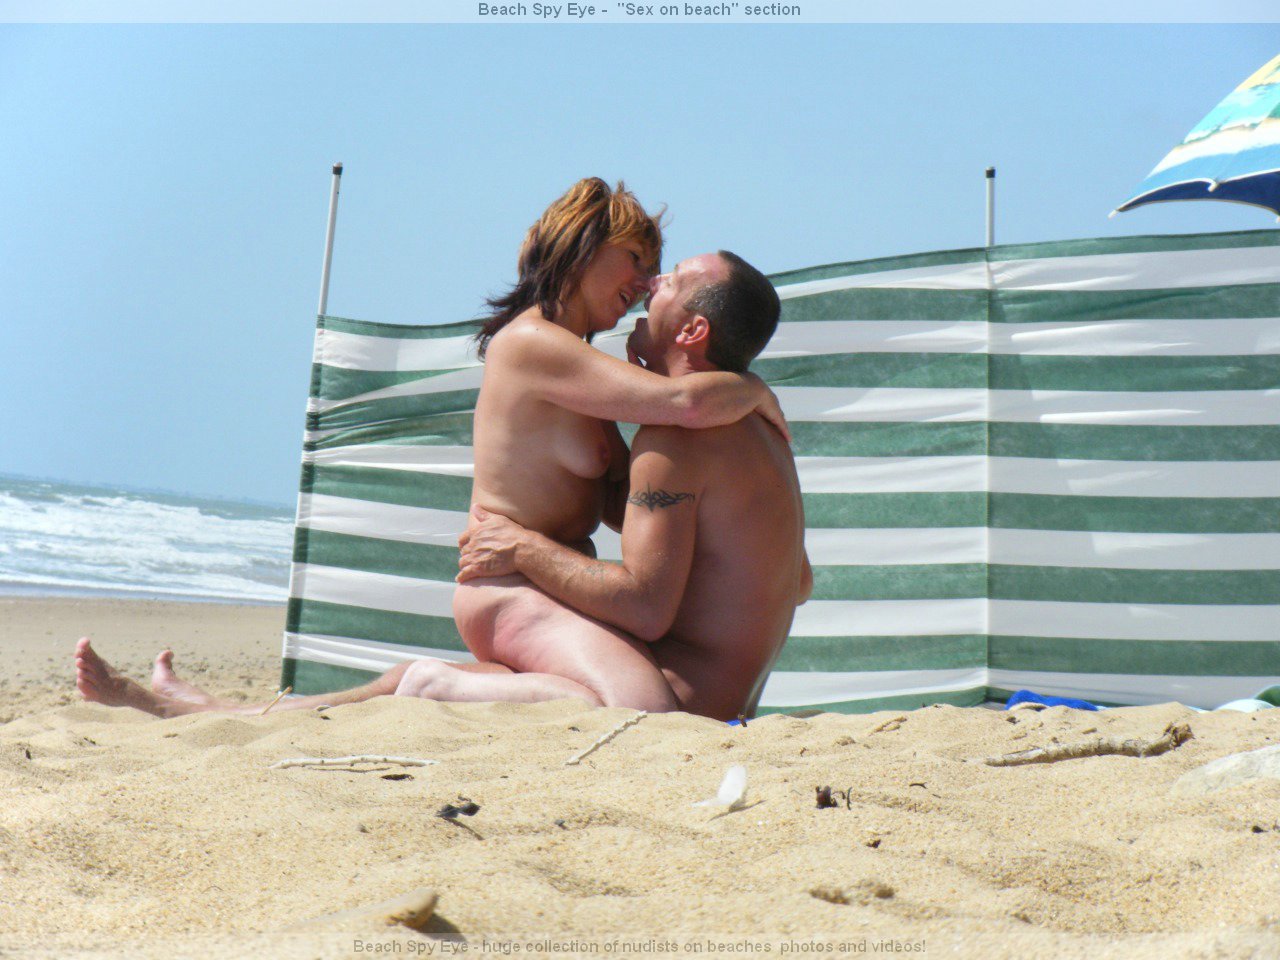 https://pbs.bulkjerk.com/39/3926/pictures/4049-5-voyeur-beach-sex.jpg